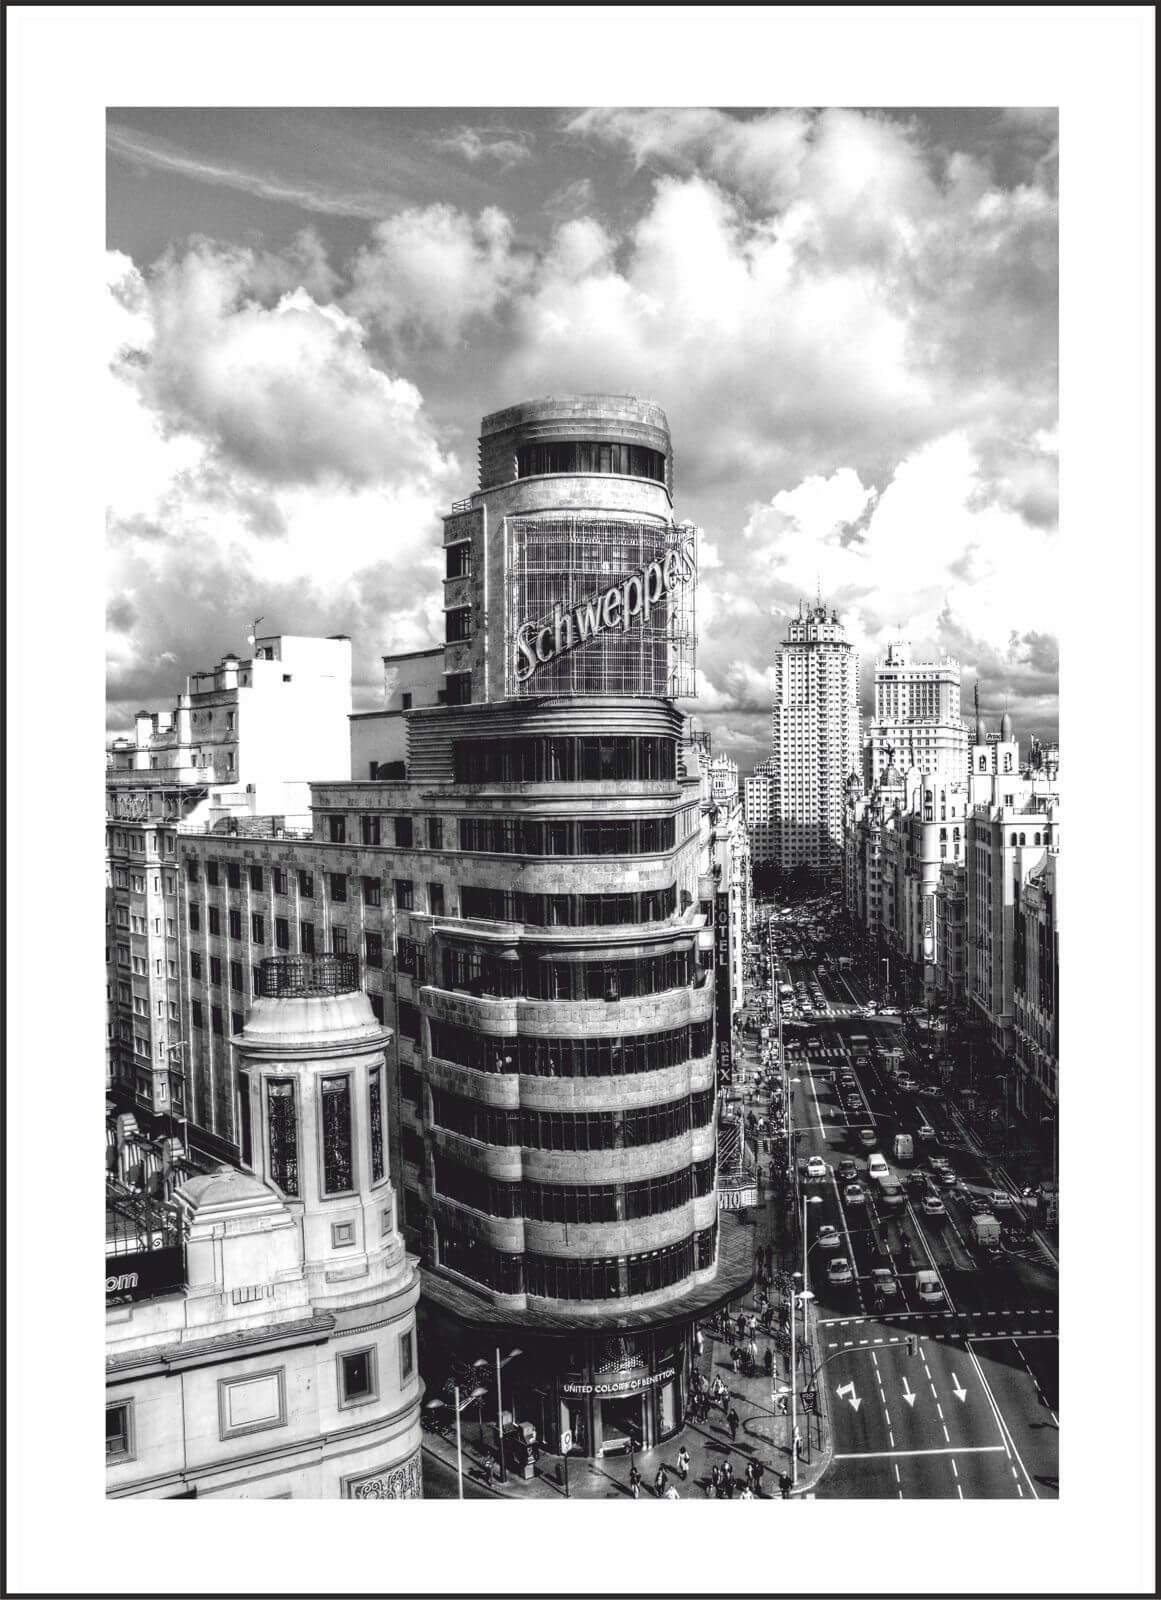 Lienzo enmarcado en madera color negro, Cuadro fotografía blanco y negro Gran Vía de Madrid, Edificio Carrión, Callao.